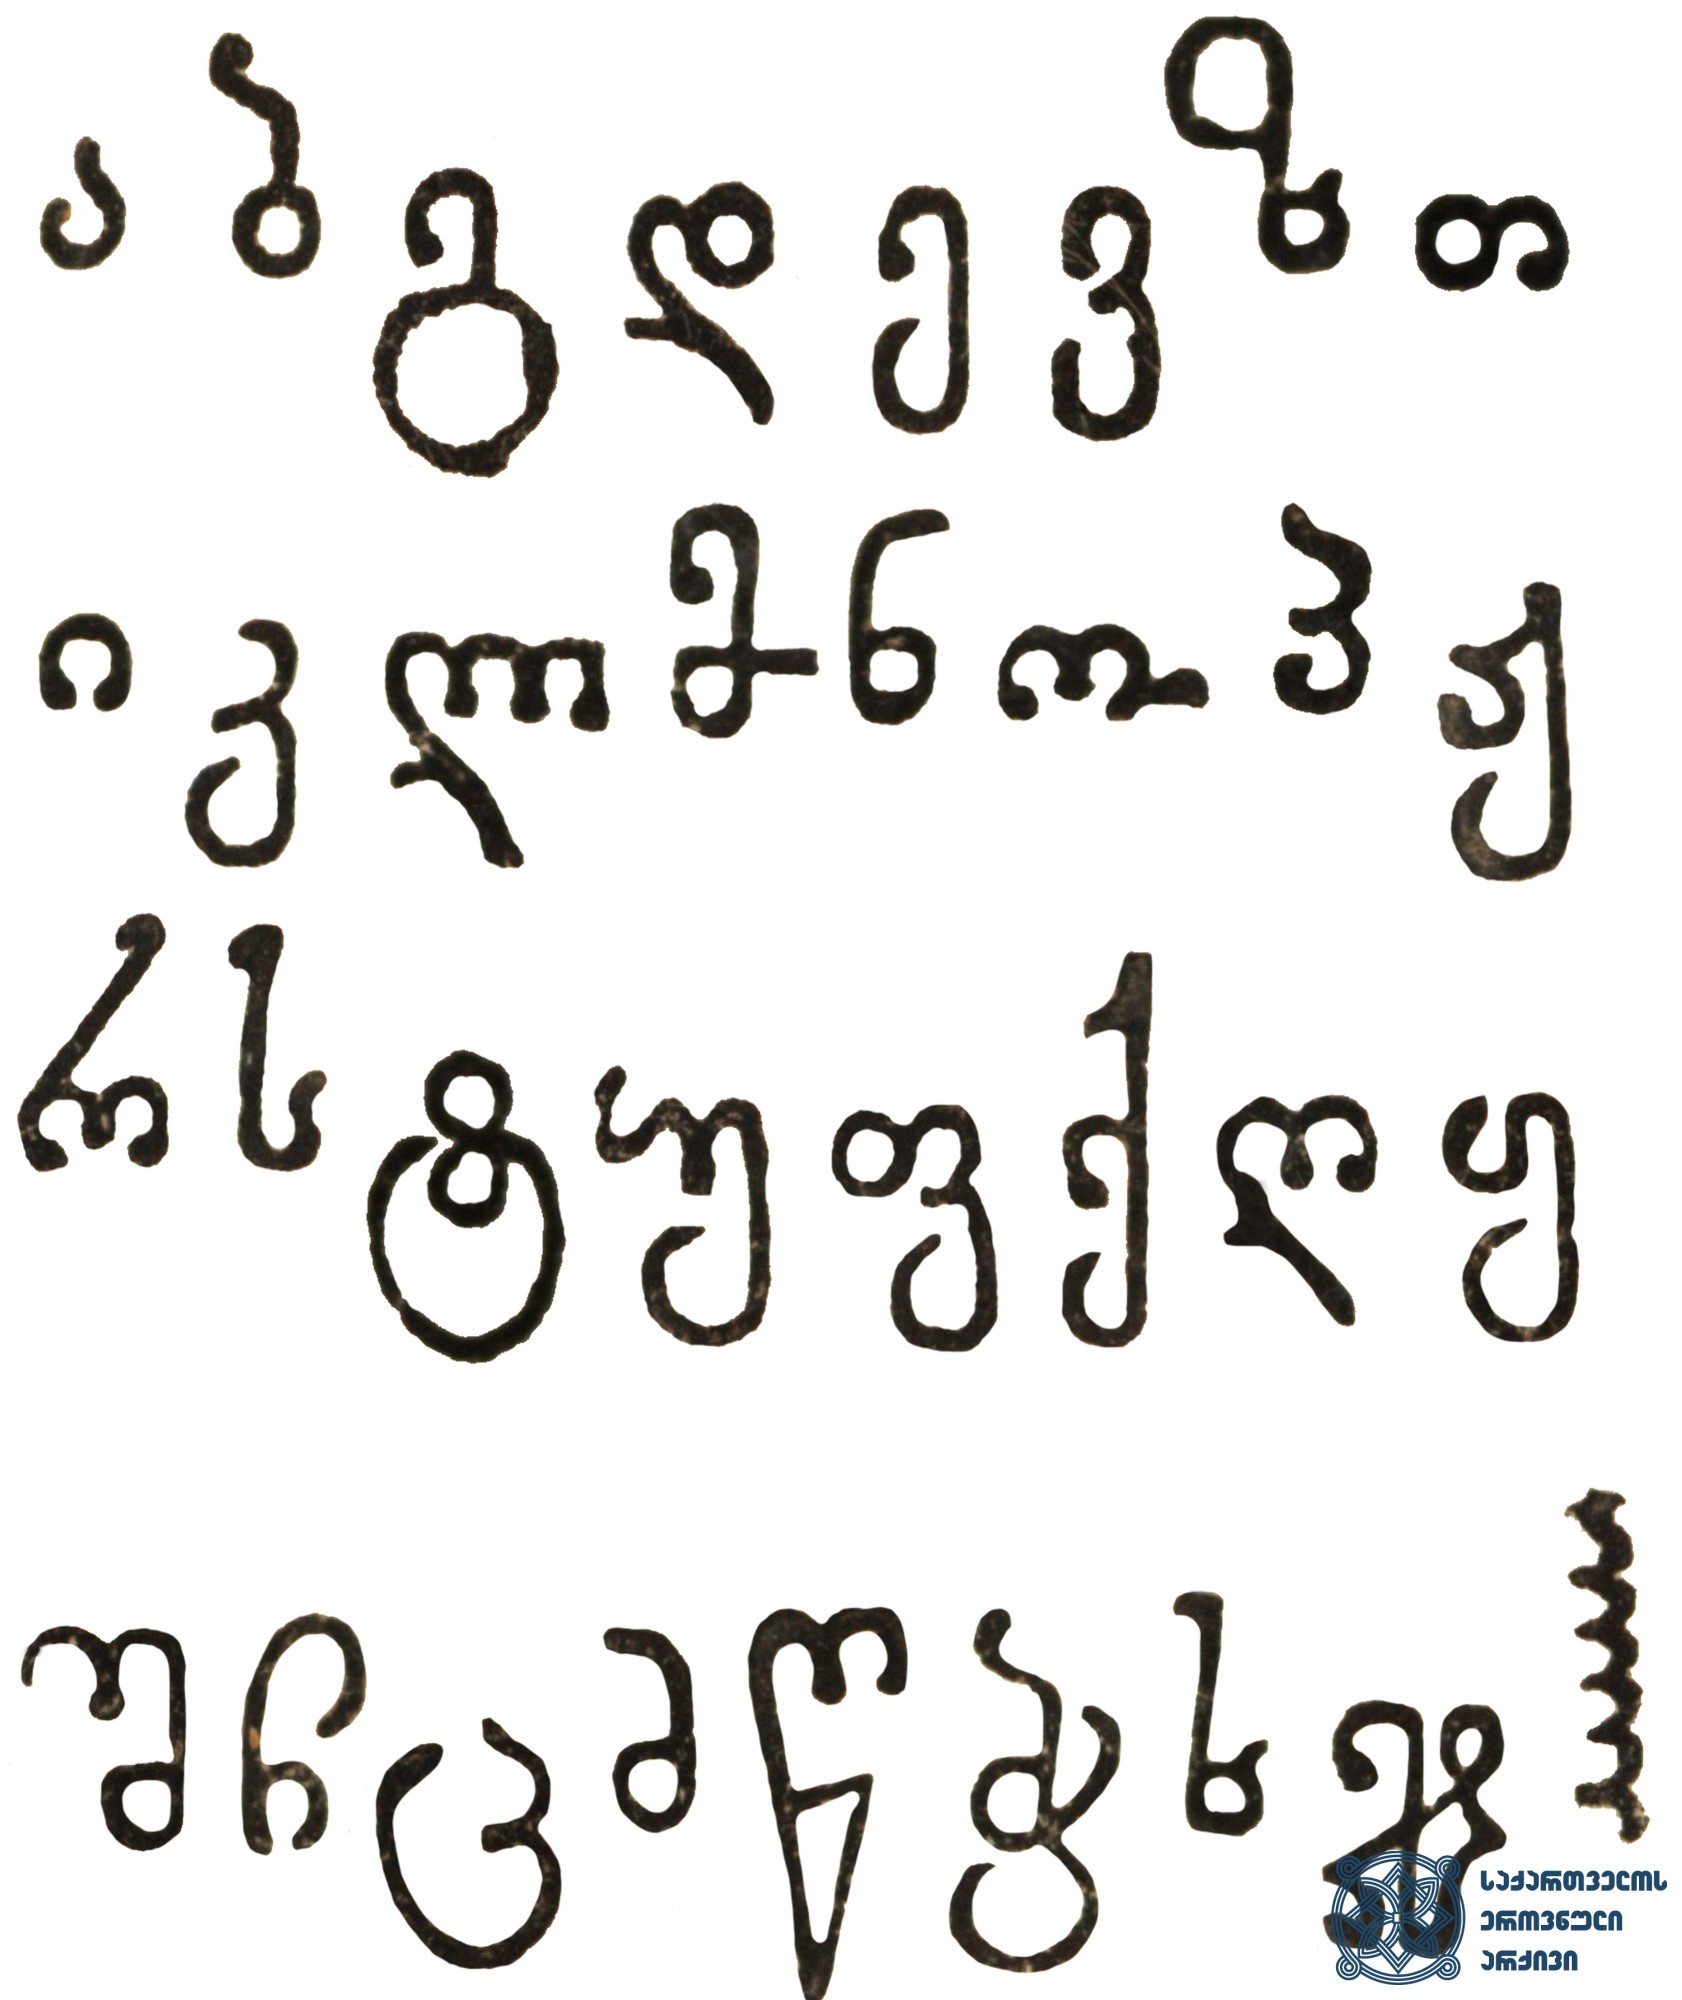 ვახტანგ VI-ის სტამბაში გამოცემულ წიგნებში გამოყენებული მხედრული შრიფტი <br>
ტფილისი, 1709-1717 <br>
Mkedruli Type used in the Books printed in the Printing House of Vakhtang VI <br>
Tfilisi, 1709-1717